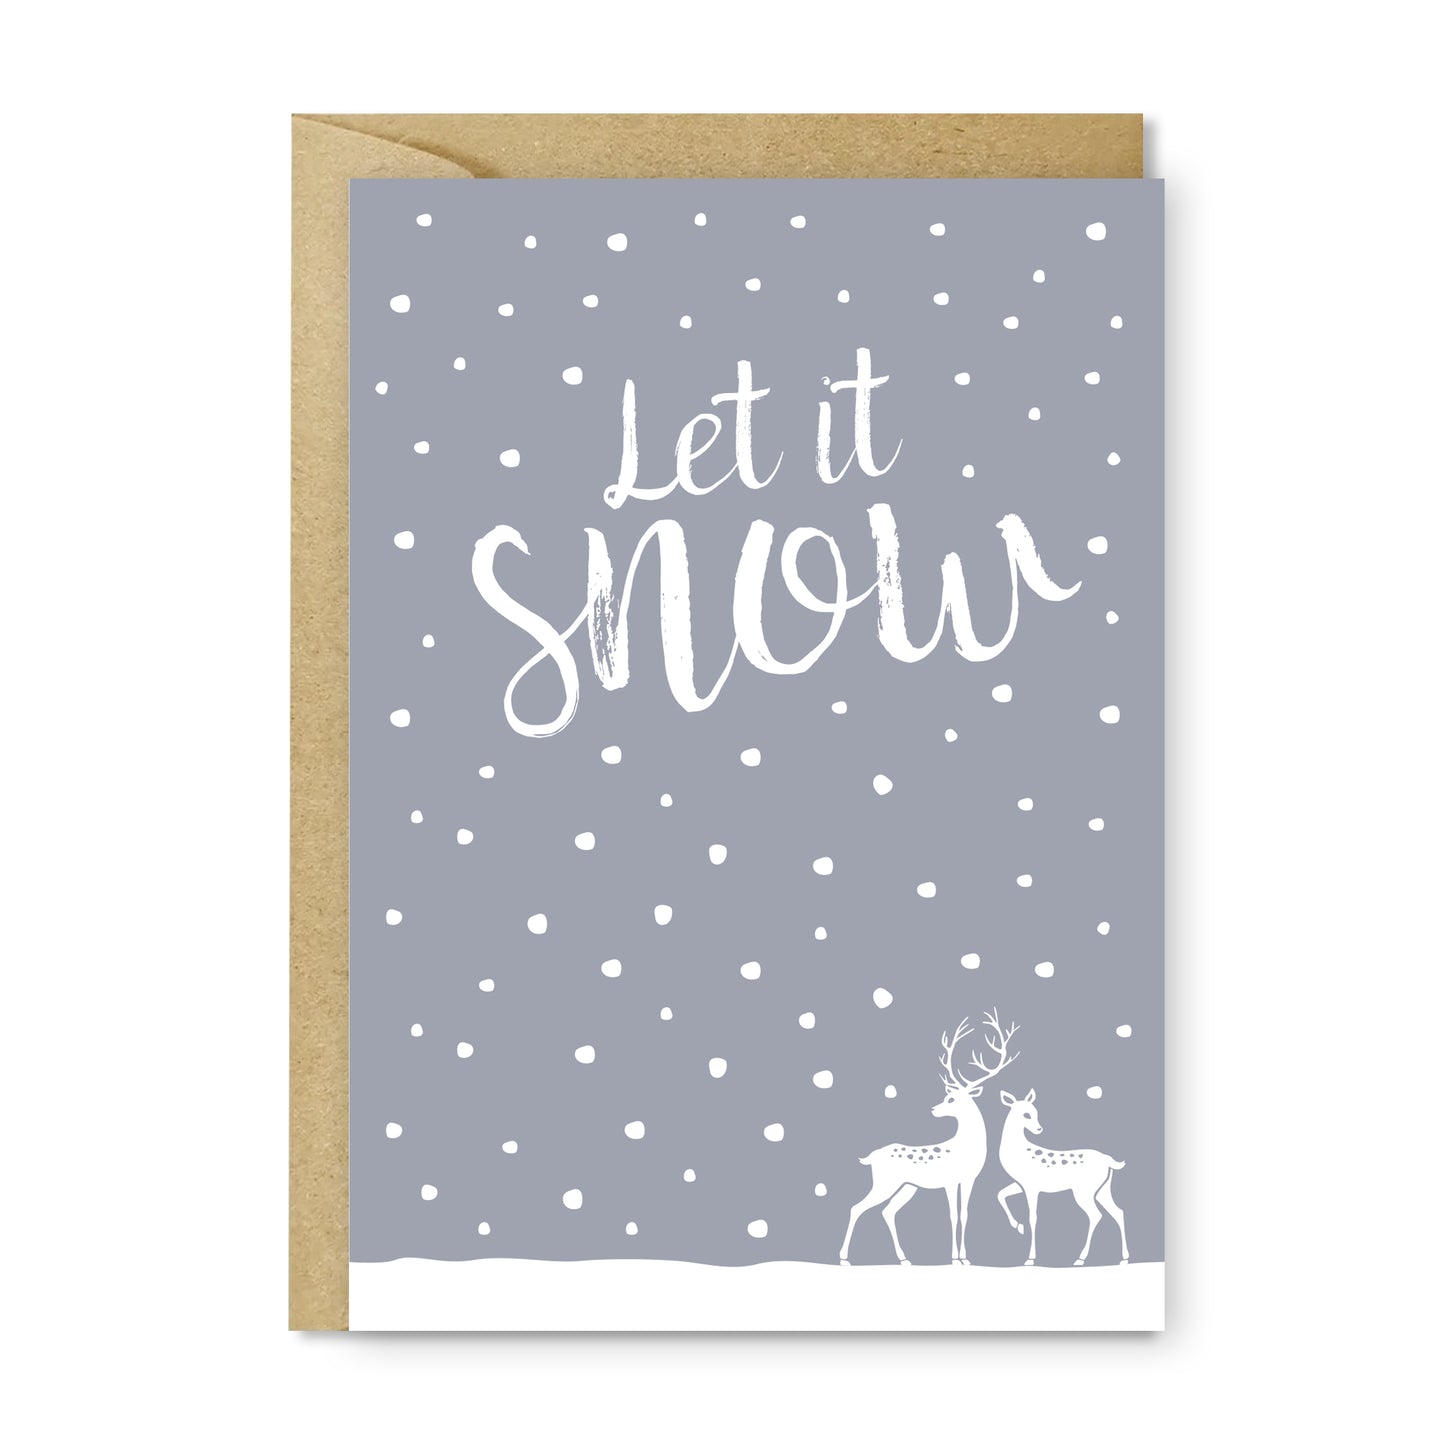 Let it snow deer Christmas card